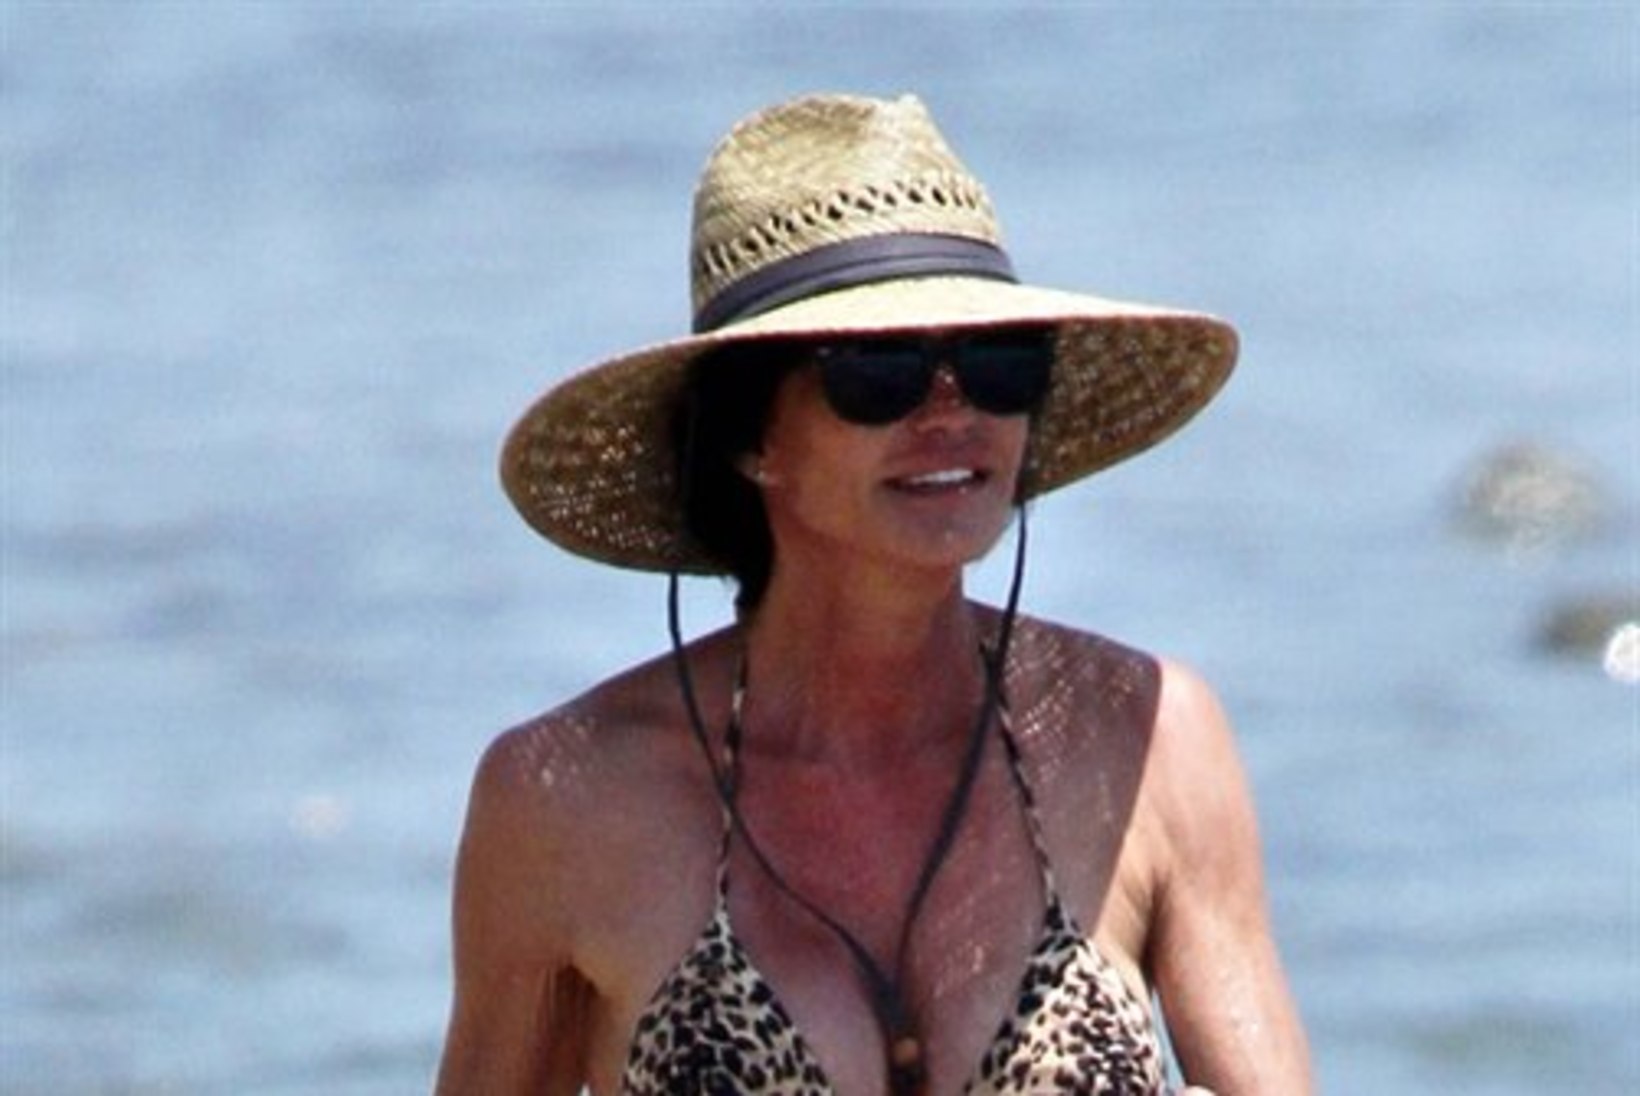 FOTOD: kortsus nahaga Janice Dickinson võttis rannas seksikaid poose